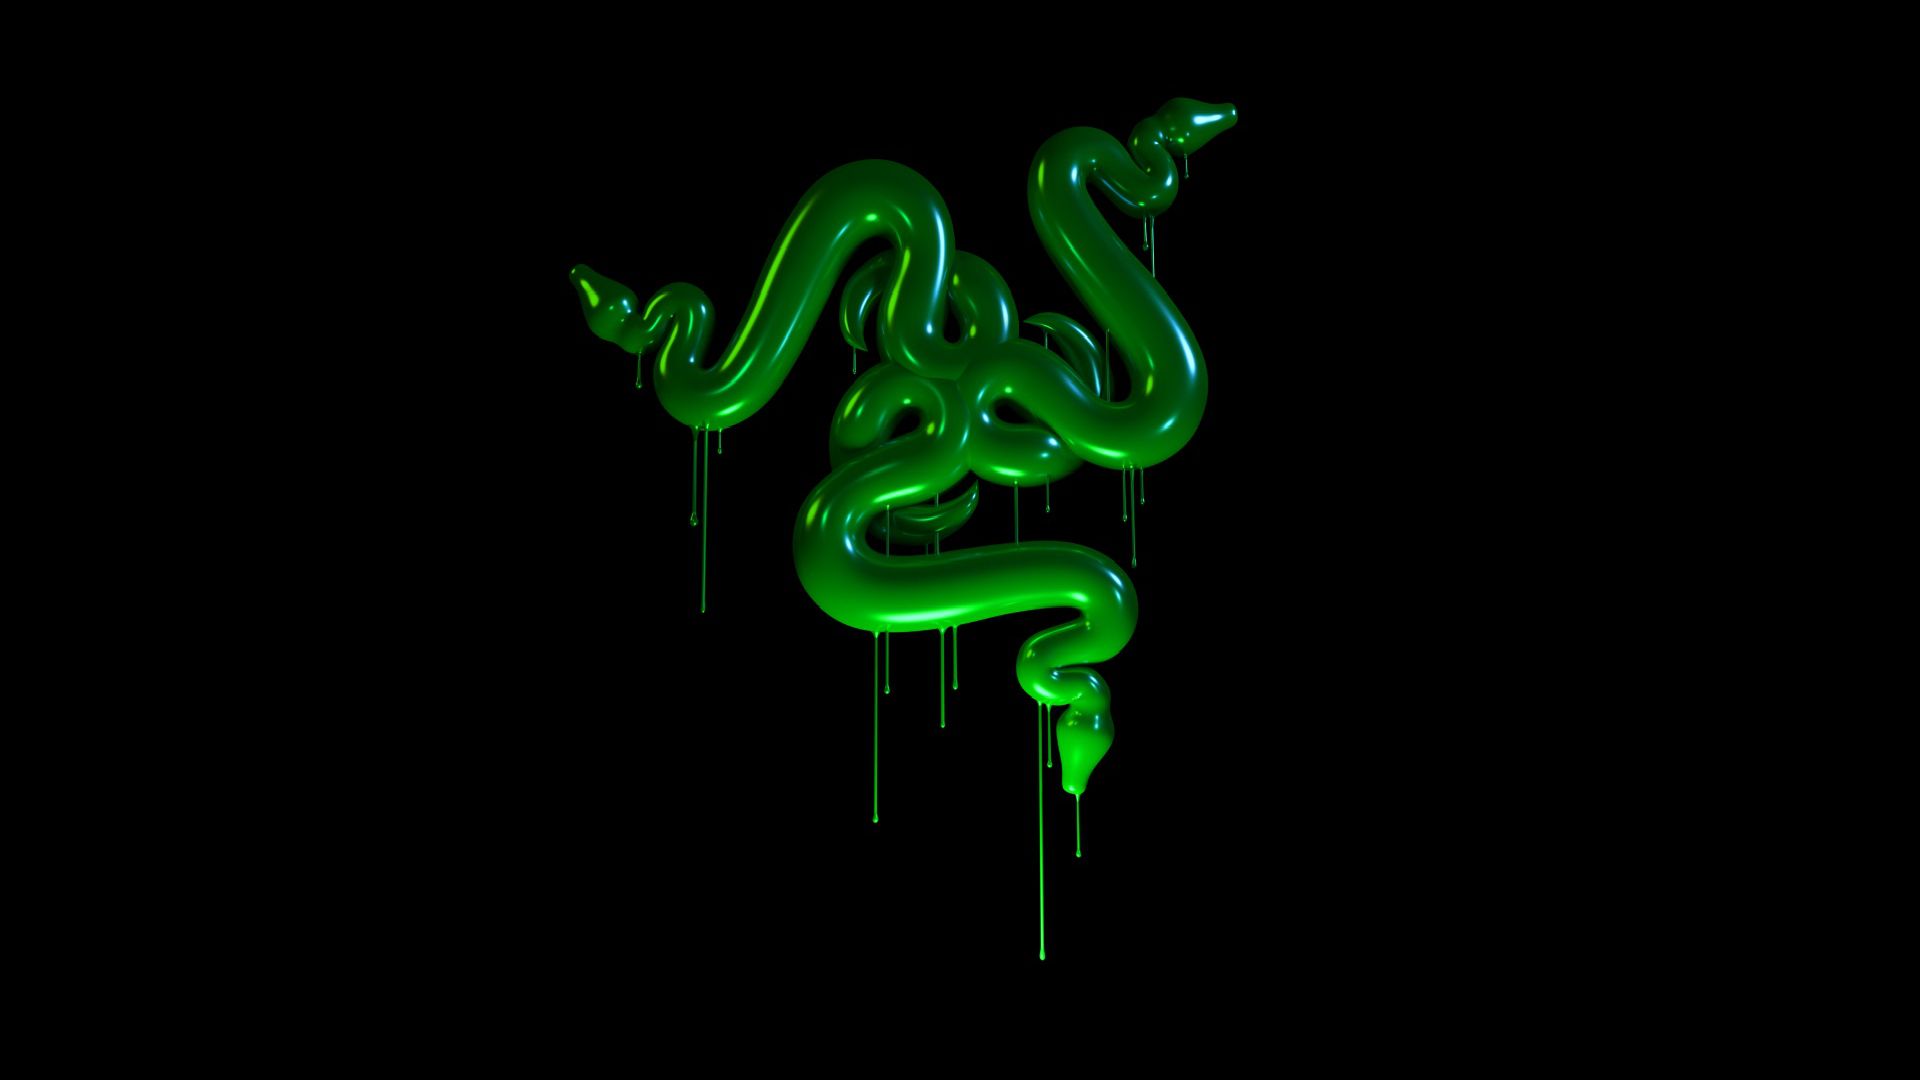 Razer Snakes Slime Background HQ Image Free Wallpaper